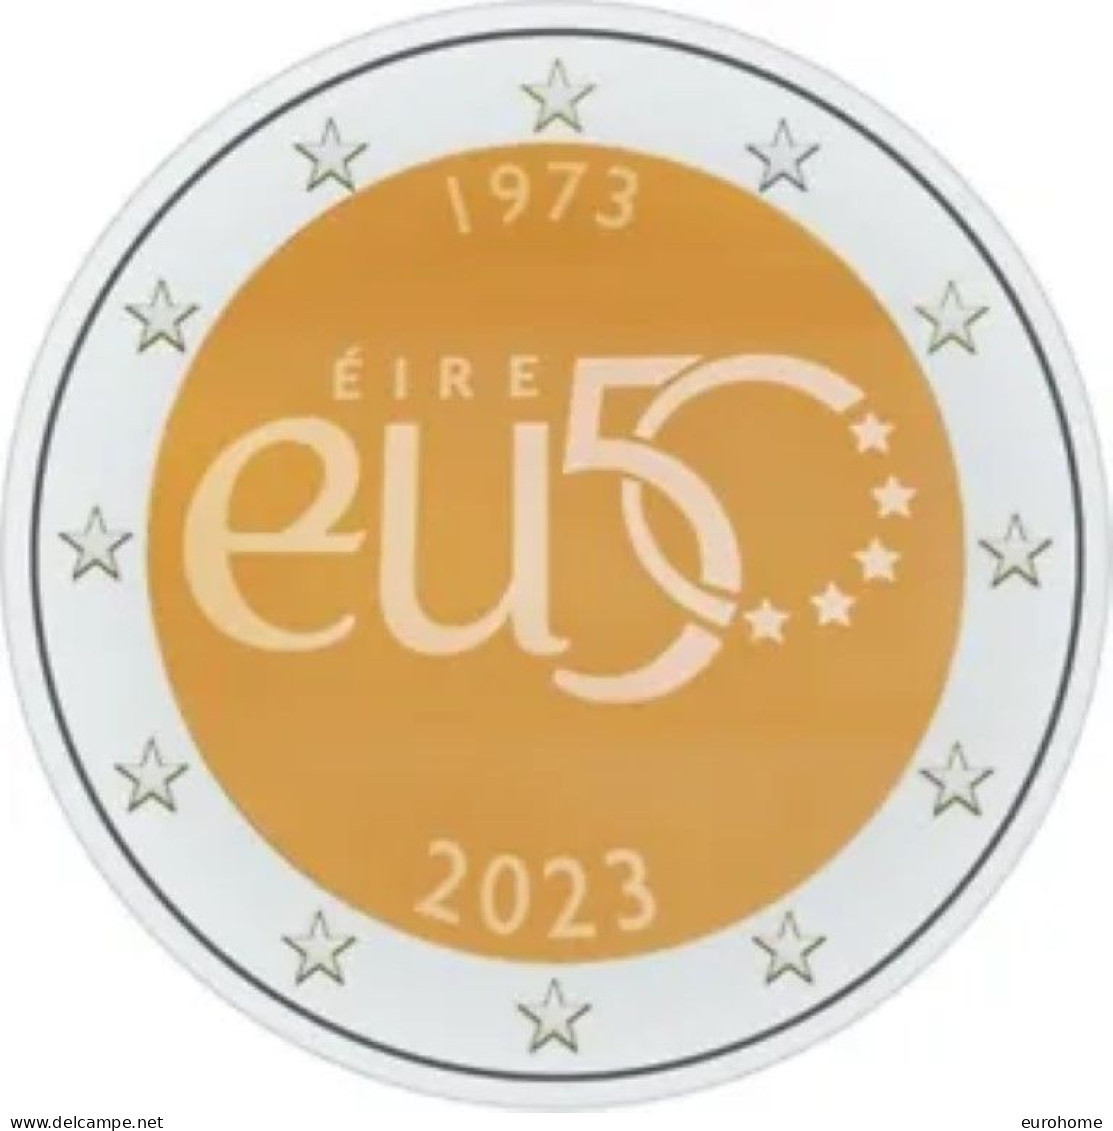 Ierland 2023    2 Euro Comm.  "50 Jaar EU Membership""    UNC Uit De Rol  UNC Du Rouleaux  !! - Ireland